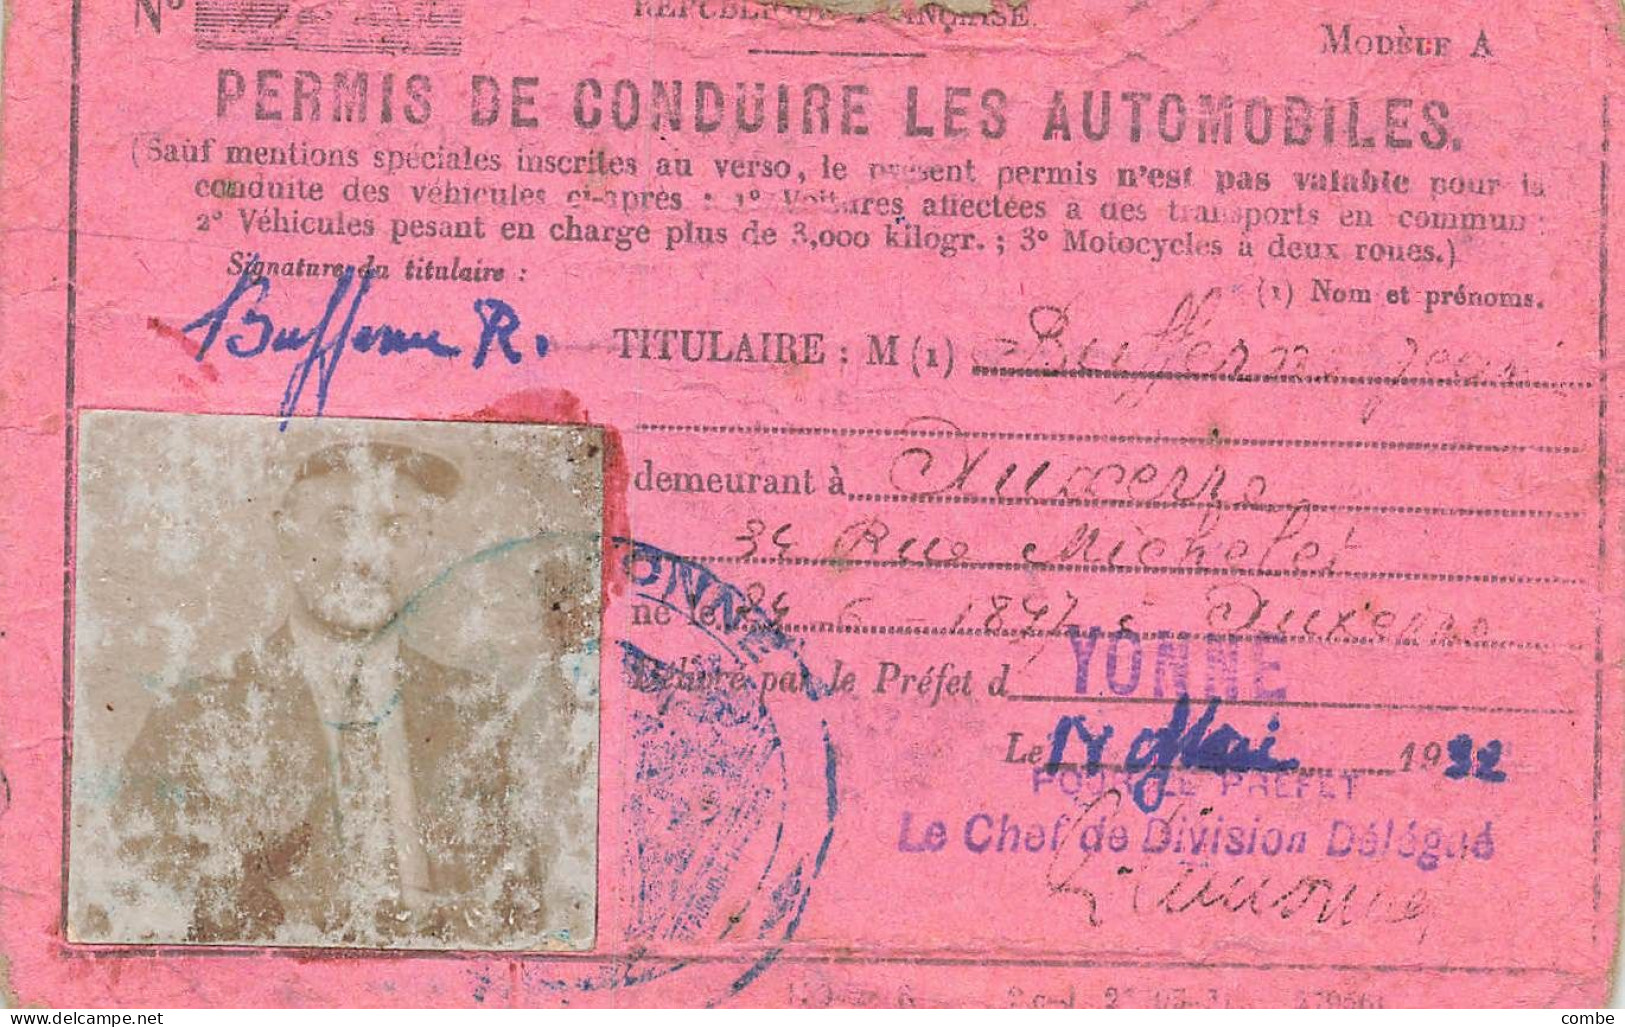 PERMIS DE CONDUIRE LES AUTOMOBILES.  YONNE. 1932 - Historical Documents